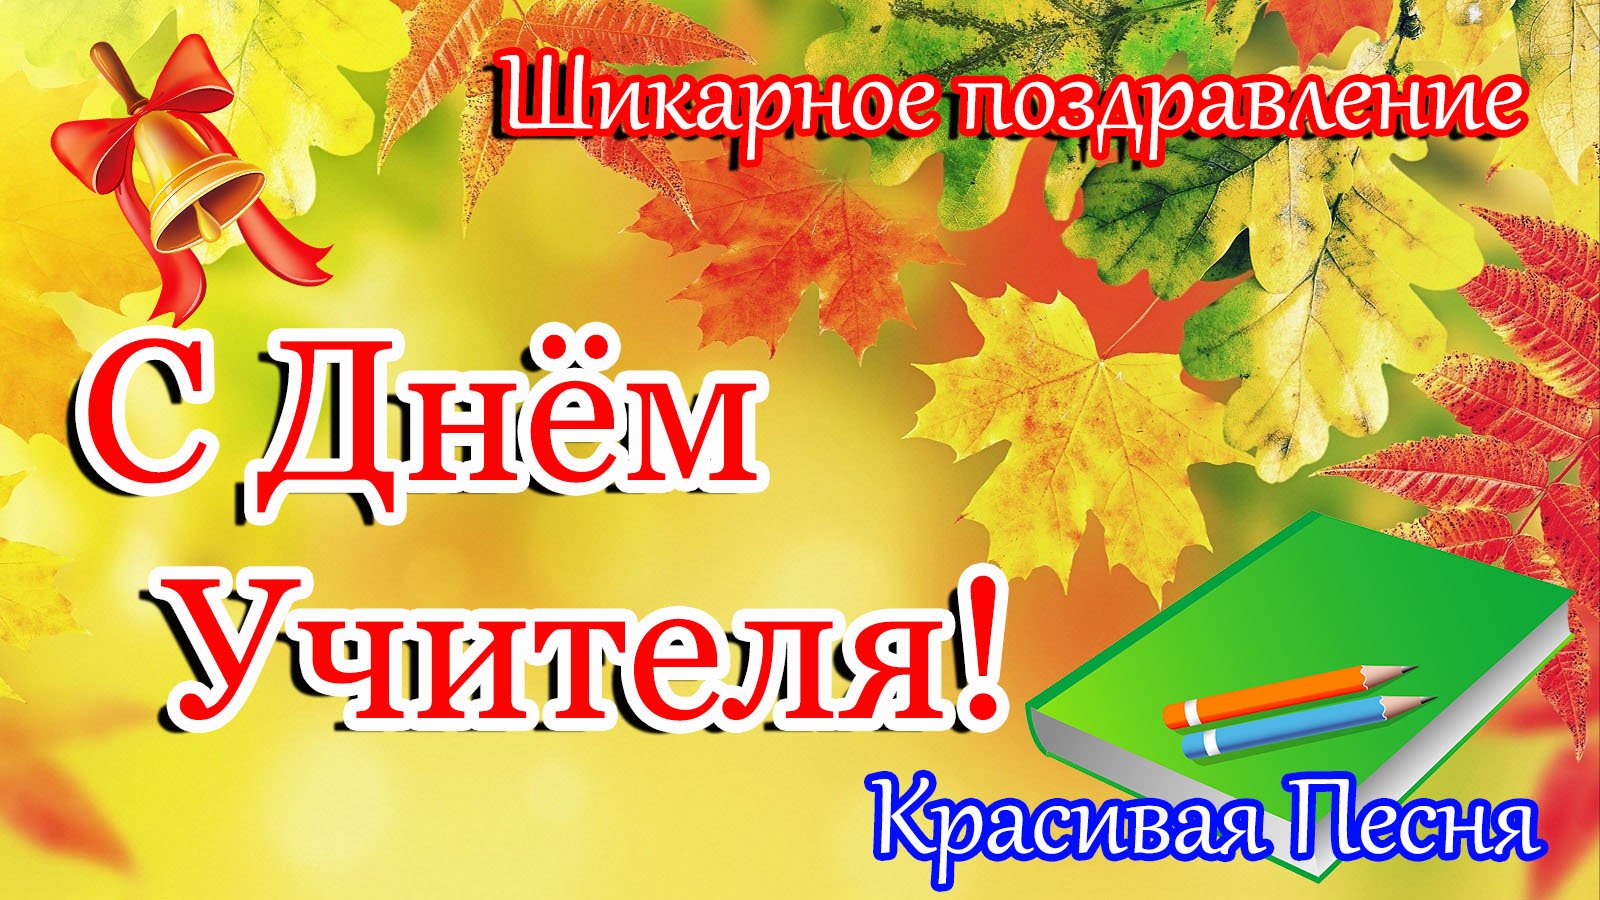 5 октября через. 5 Октября день учителя. День учителя в России. Поздравляю с днём учителя в России. 5 Октября день учителя поздравления.